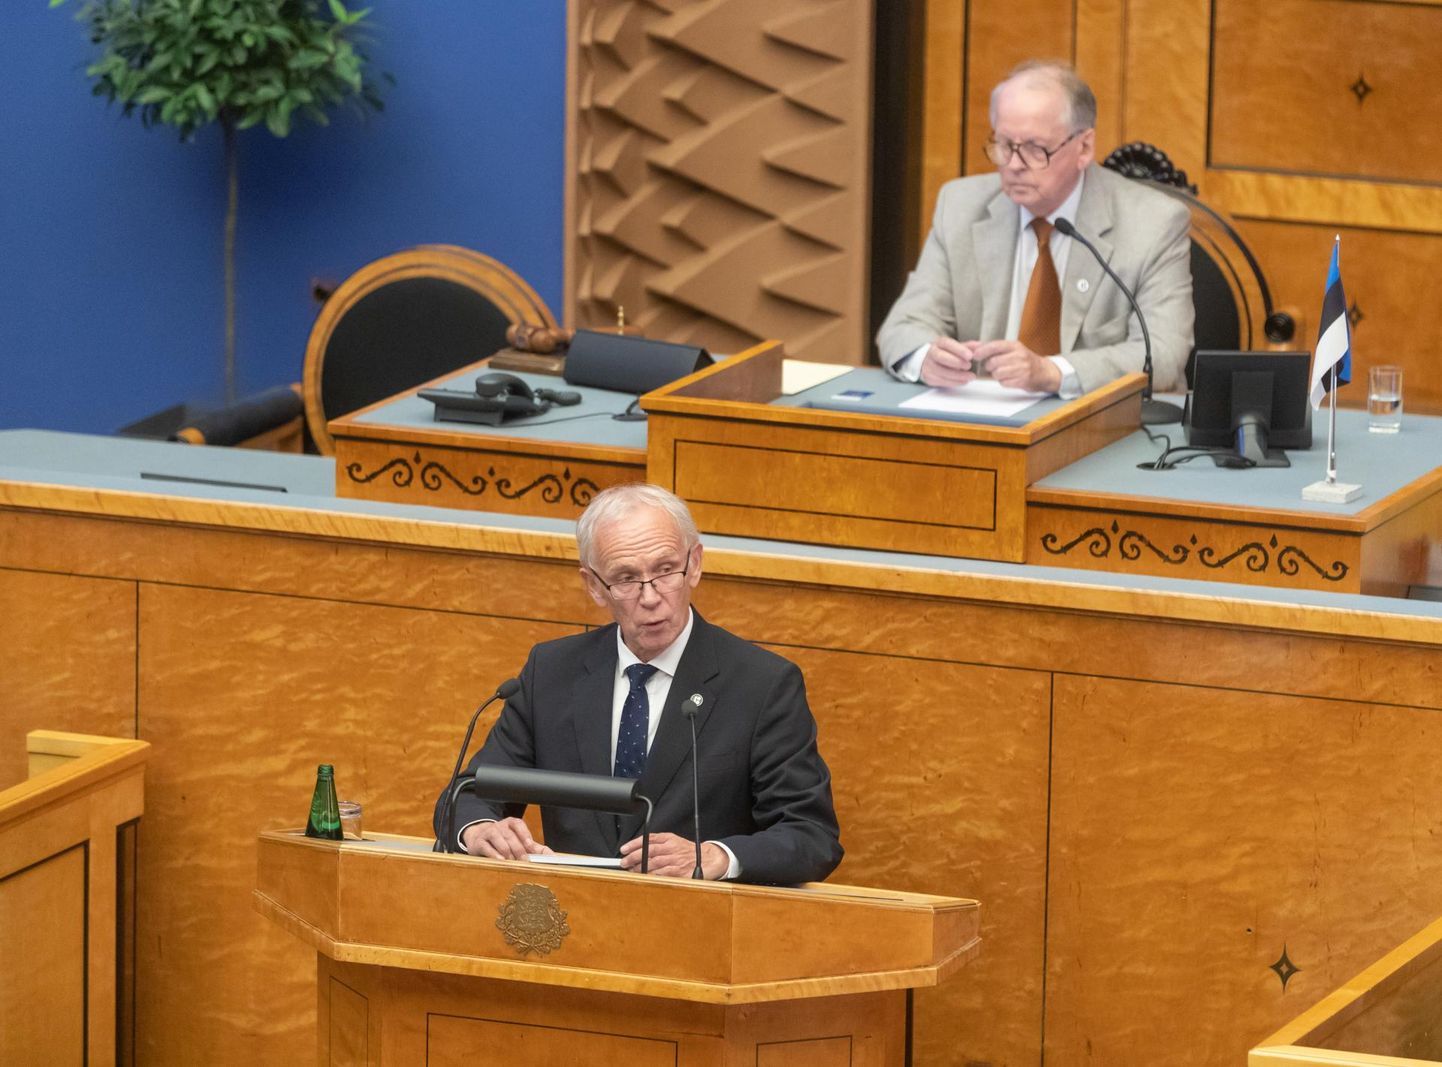 Riigikogu esimees, sotsiaaldemokraat Eiki Nestor tuli ise parlamendile üle andma avaldust ÜRO rändepakti toetuseks.